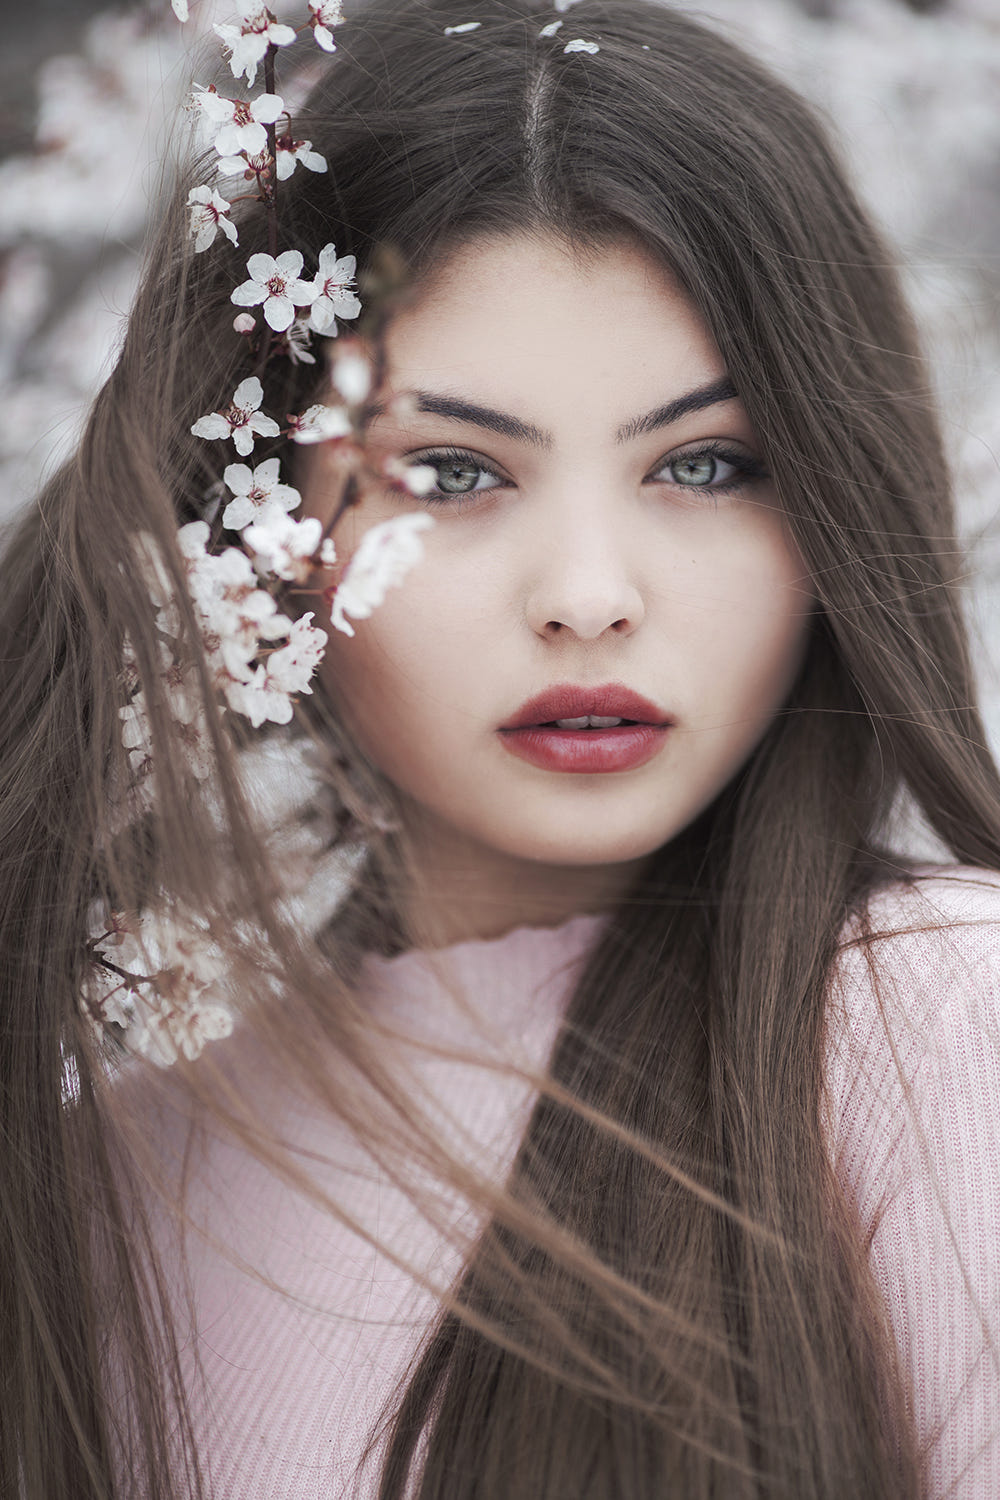 Фото Модель Andjela с весенней веткой вишни у лица, фотограф Jovana Rikalo